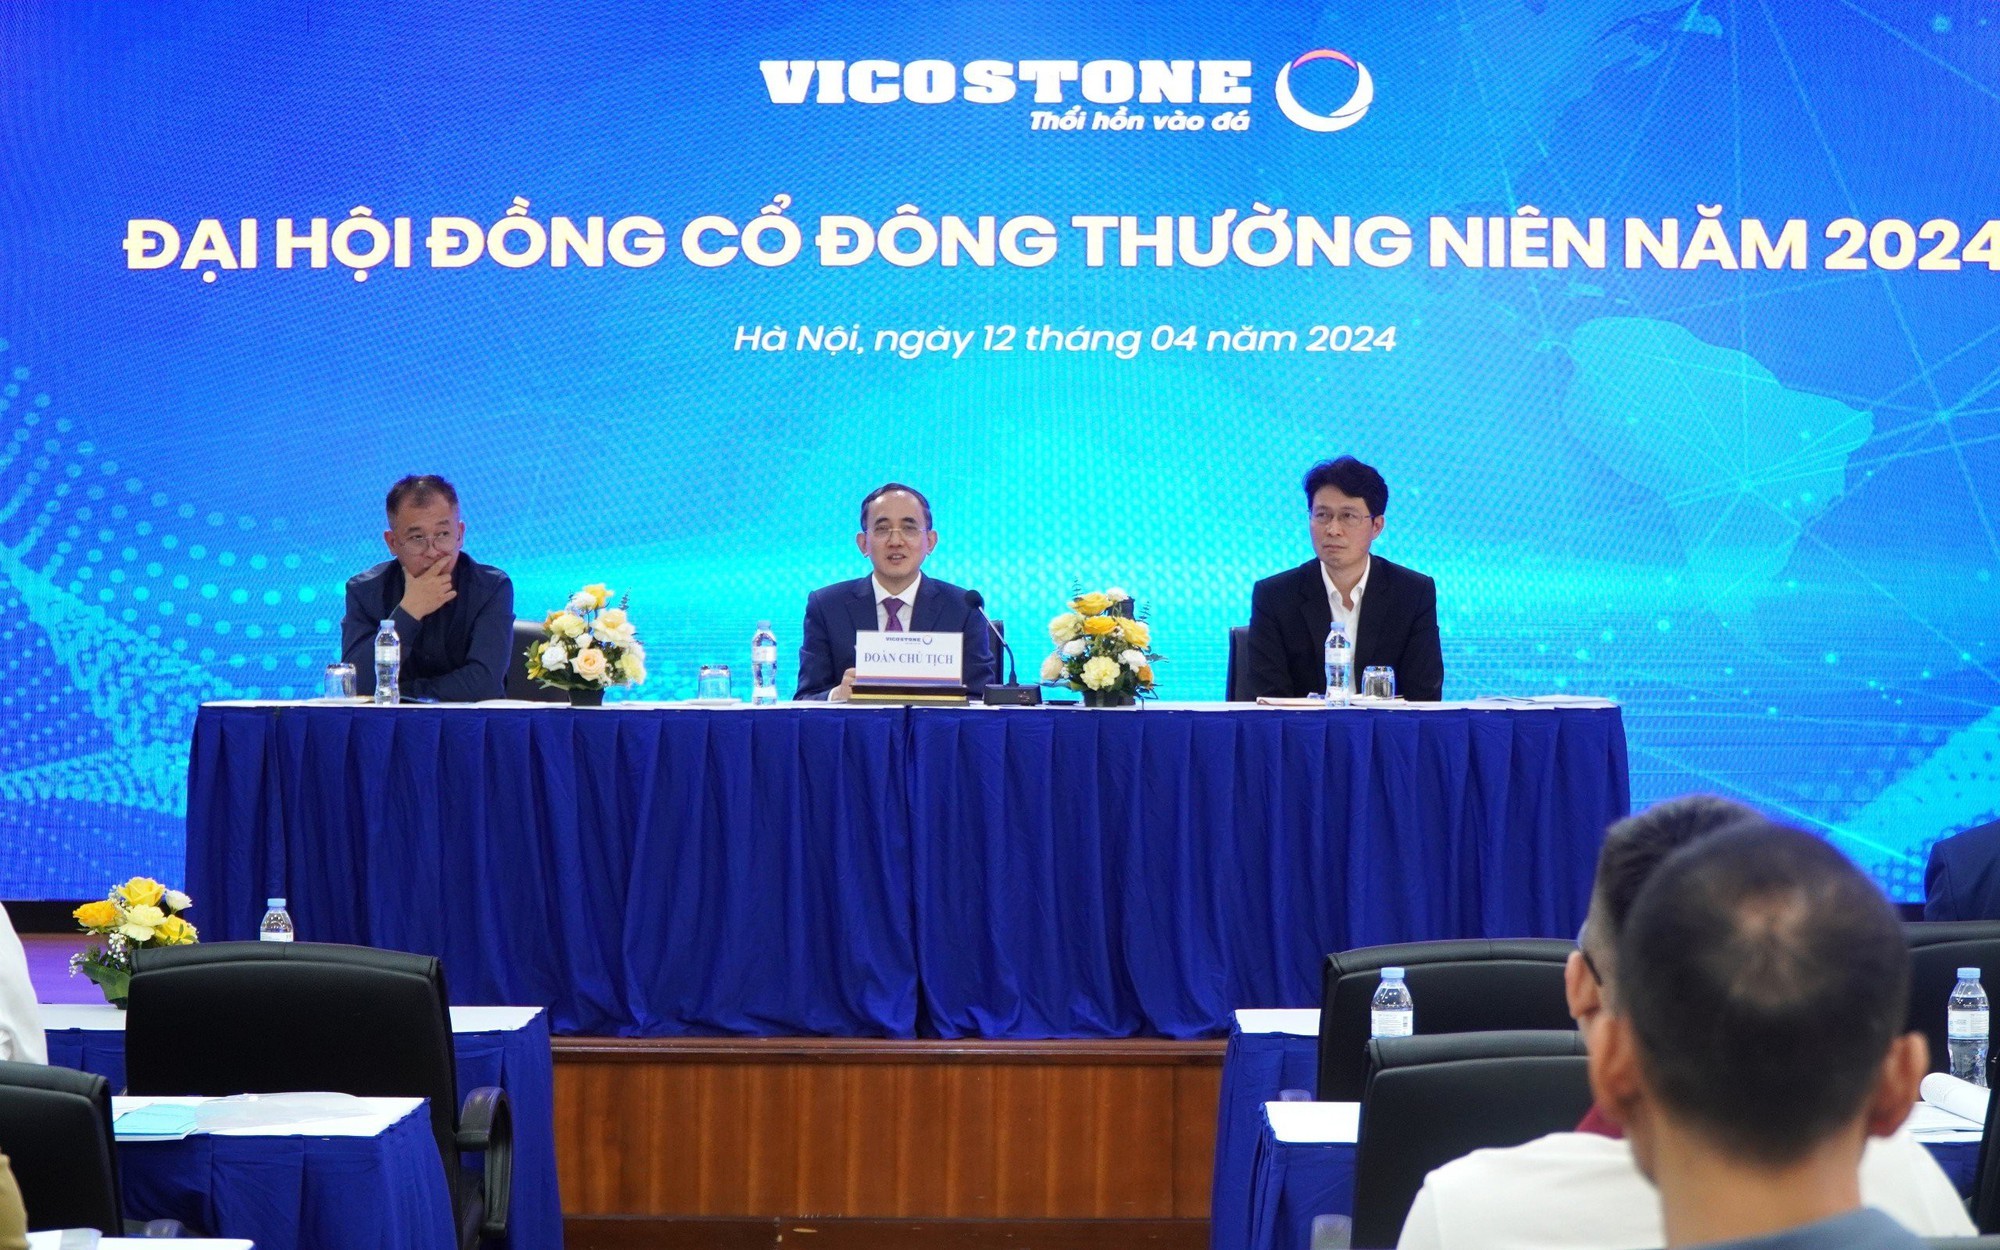 Chủ tịch Hồ Xuân Năng: Vicostone bán giá 100 USD, đối thủ bán 60 USD, có người hùng hồn tuyên bố sẽ làm Vicostone gục ngã